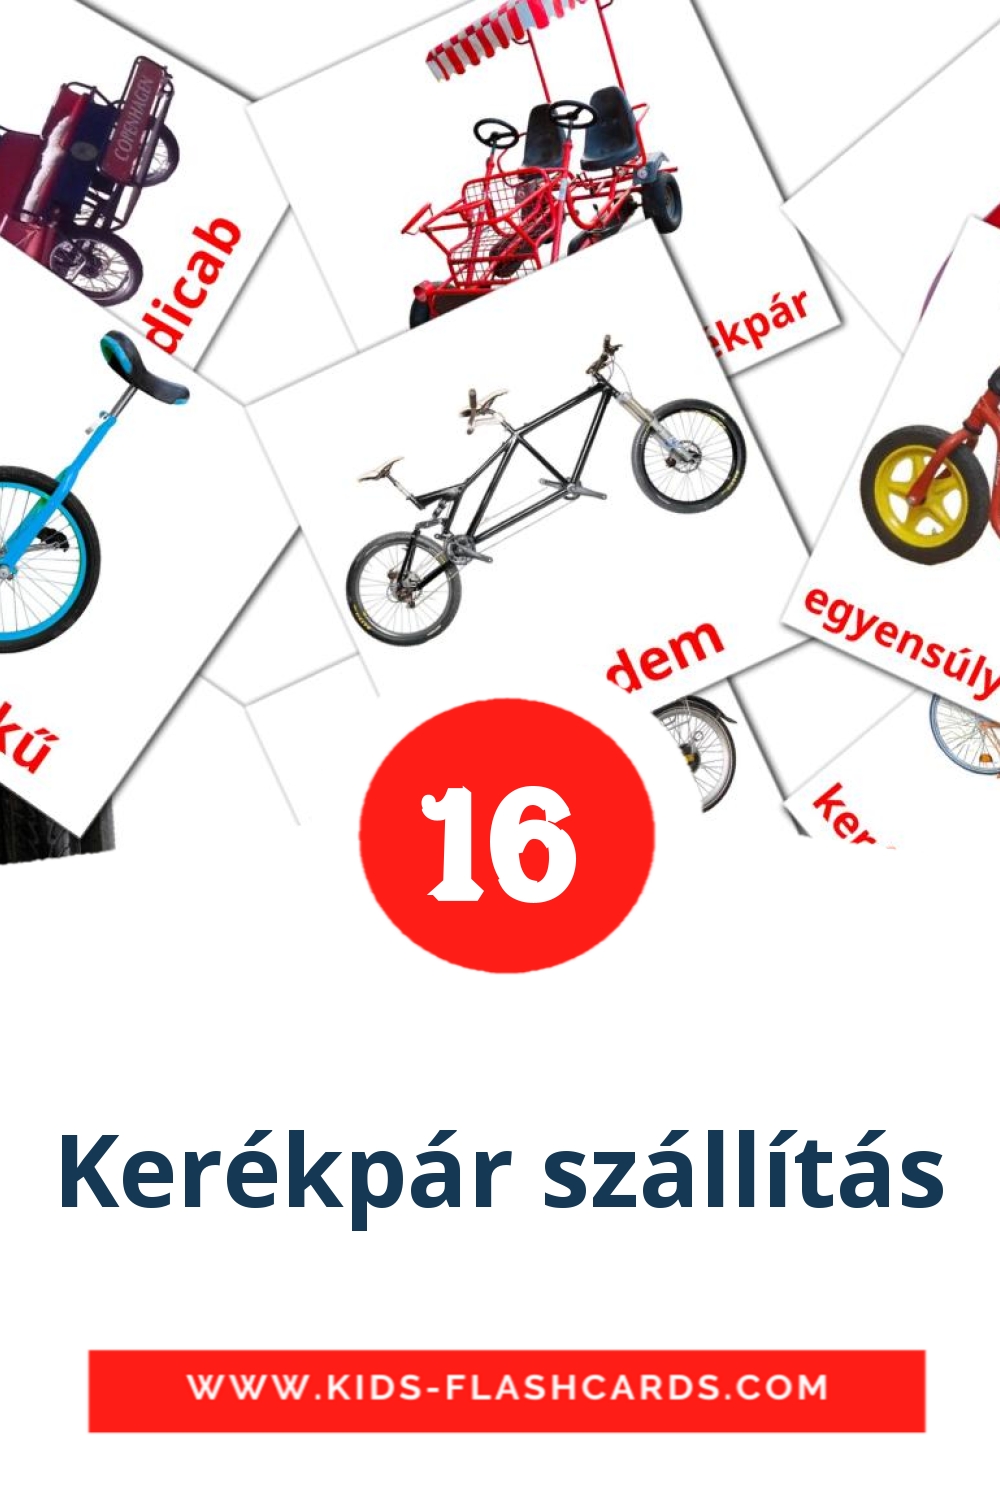 16 Cartões com Imagens de Kerékpár szállítás para Jardim de Infância em hungaro